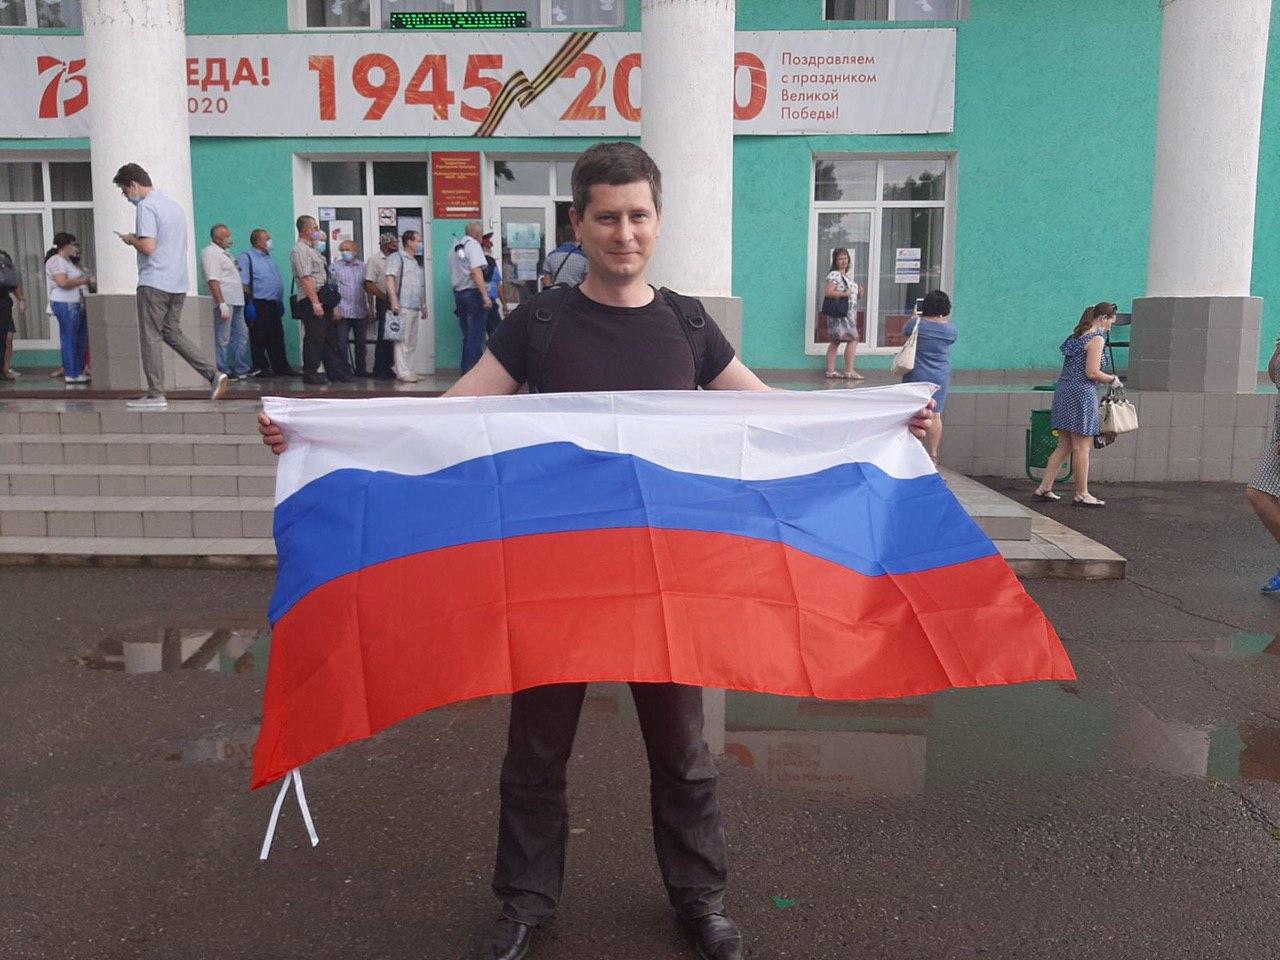 Избиратель с российским флагом у избирательного участка в ростовском селе Куйбышево 29 июня 2020 года. Фото Spektr.Press